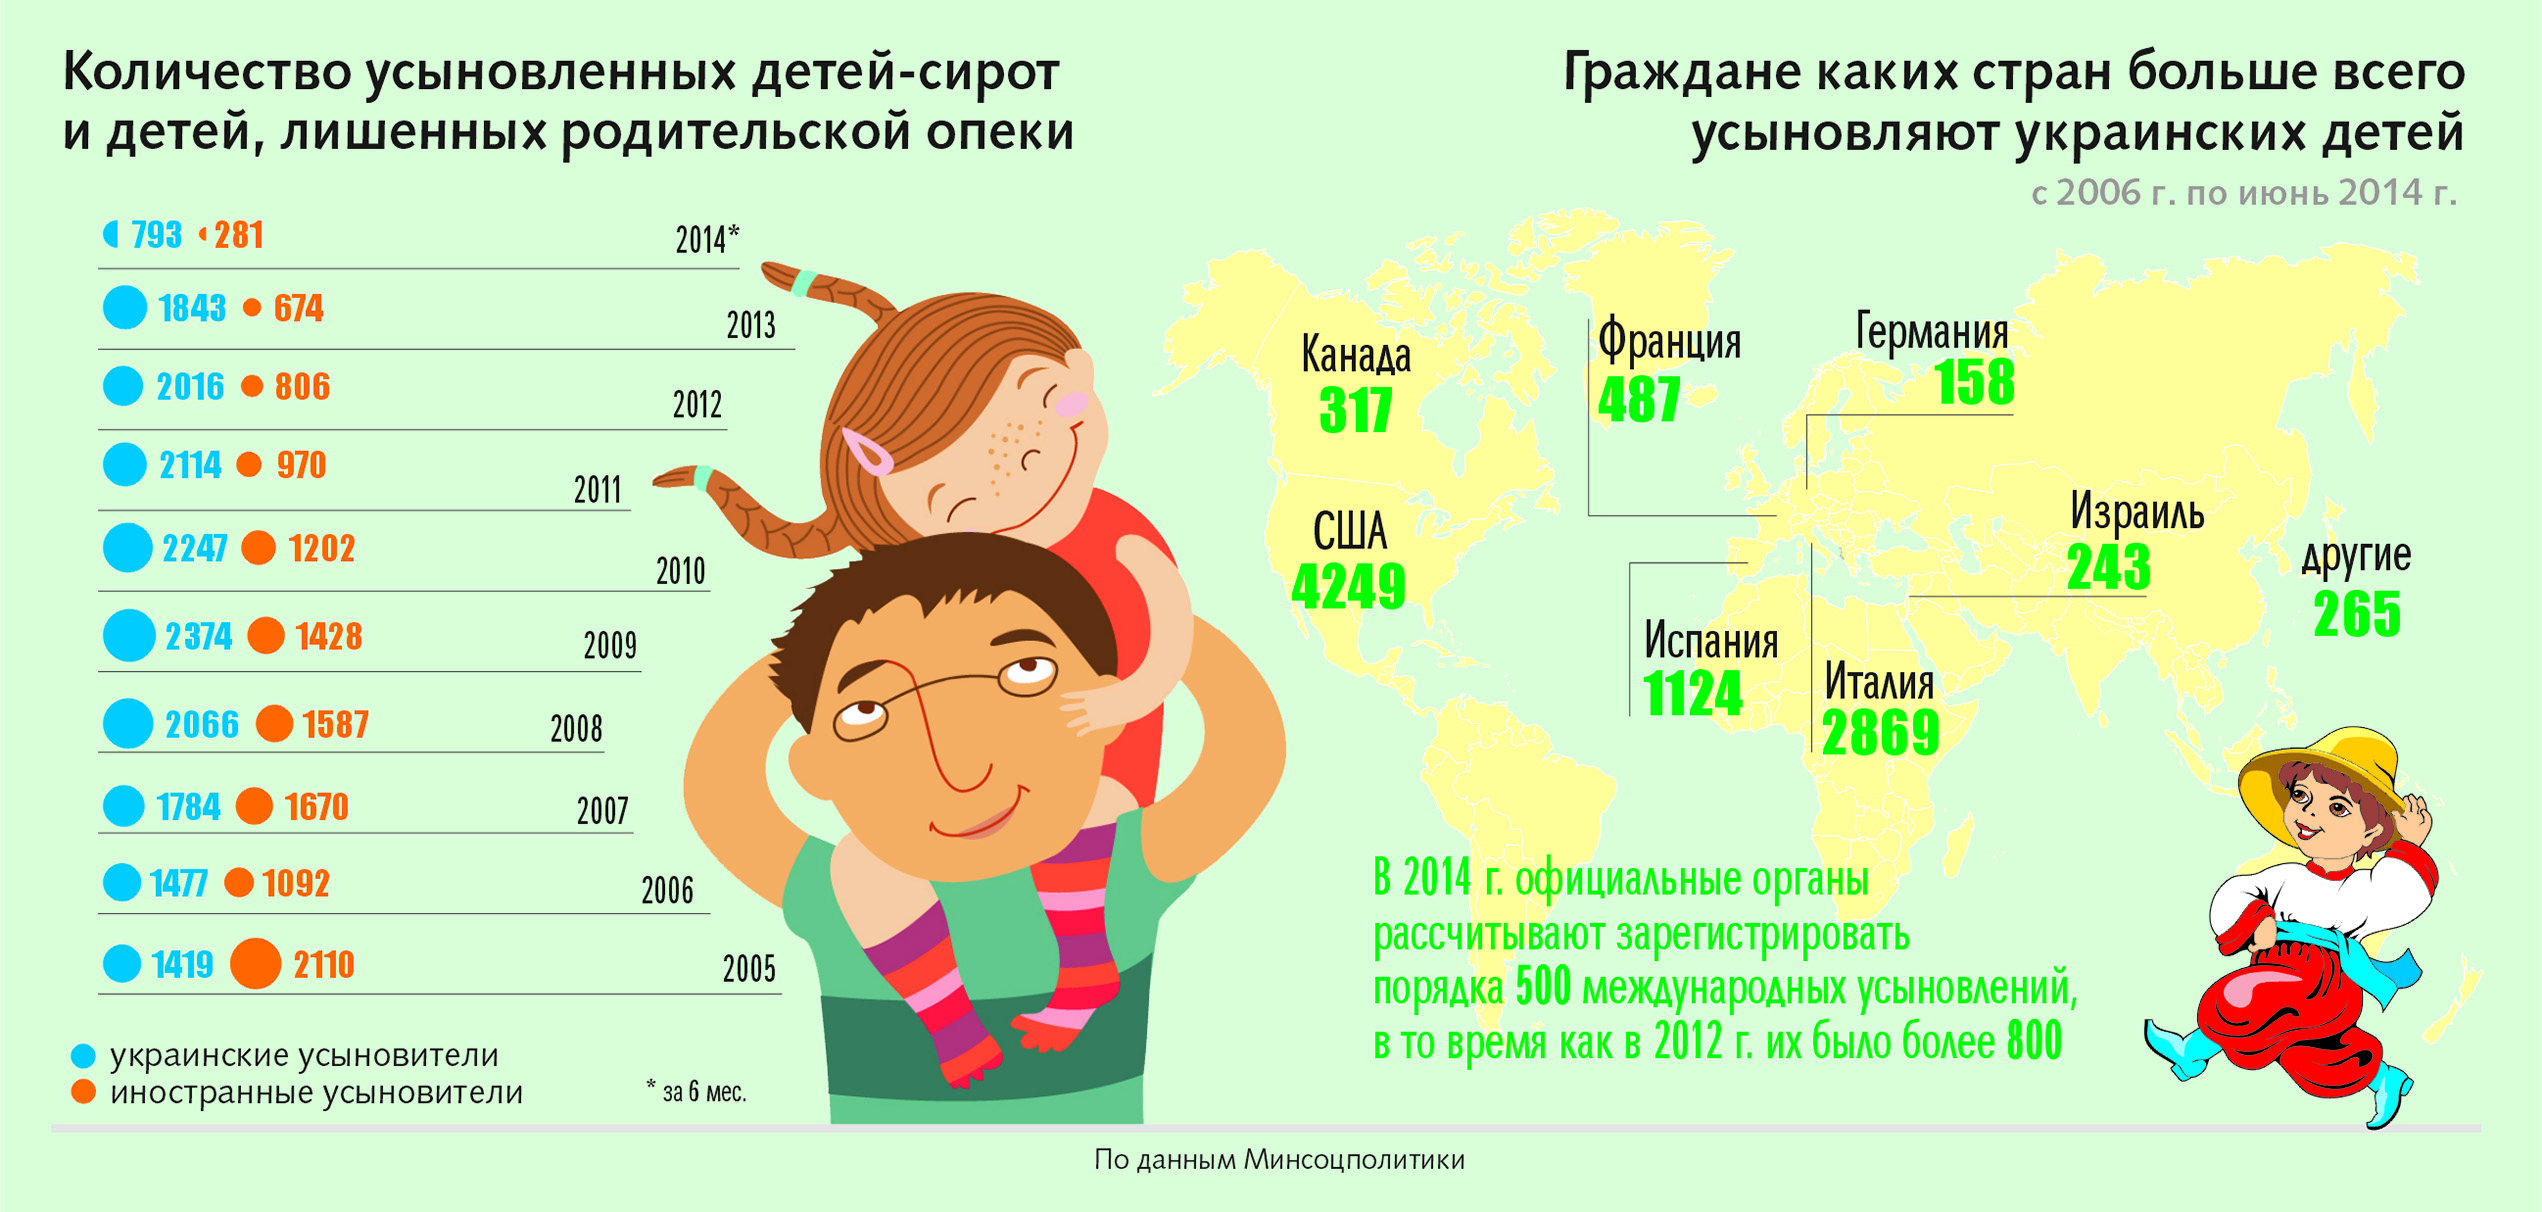 Забыла сколько детей. Статистика детей сирот по странам. Статистика детей сирот в России. Количество детей в стране. Количество сирот в мире по странам.